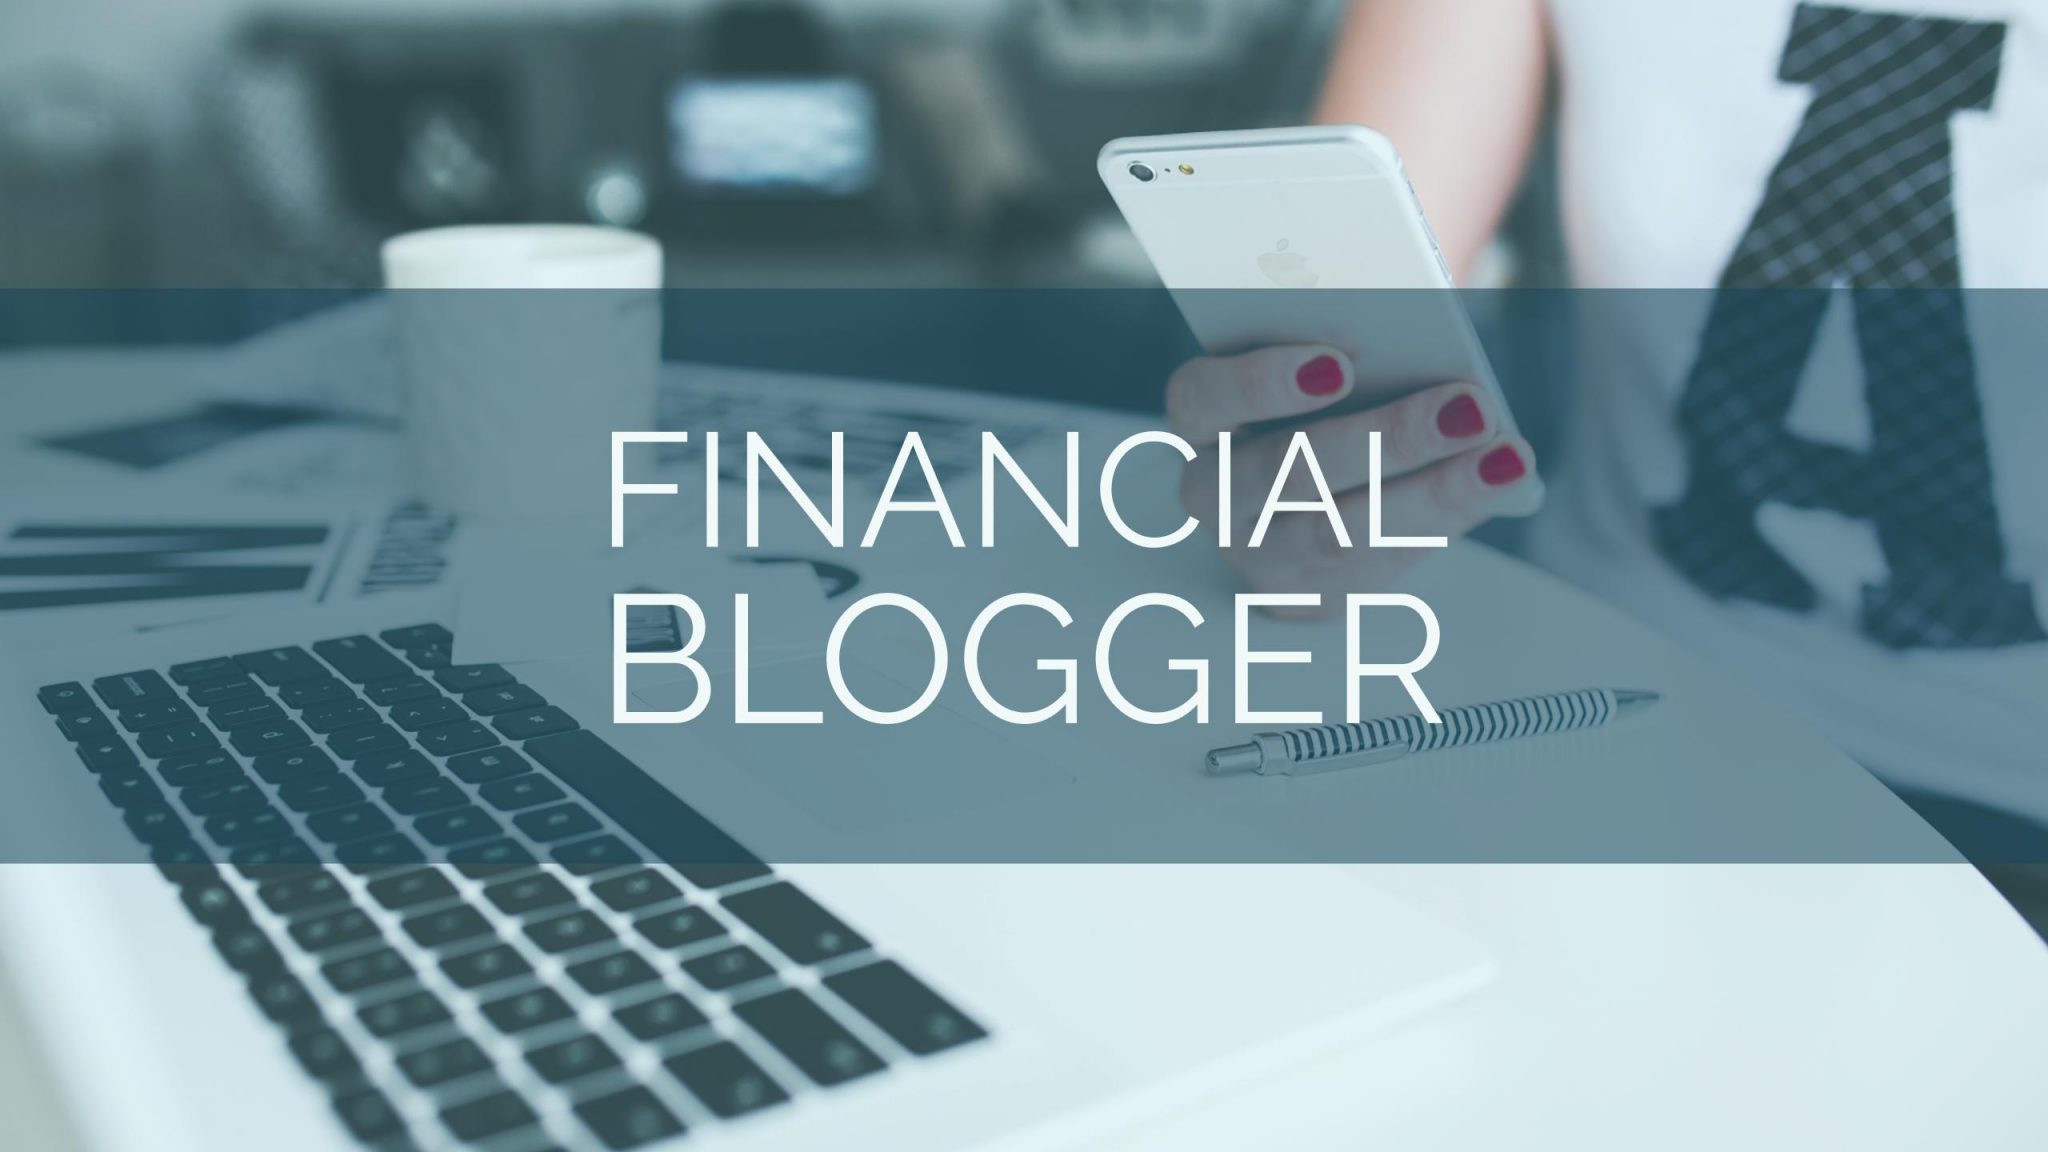 Financial-Blogger